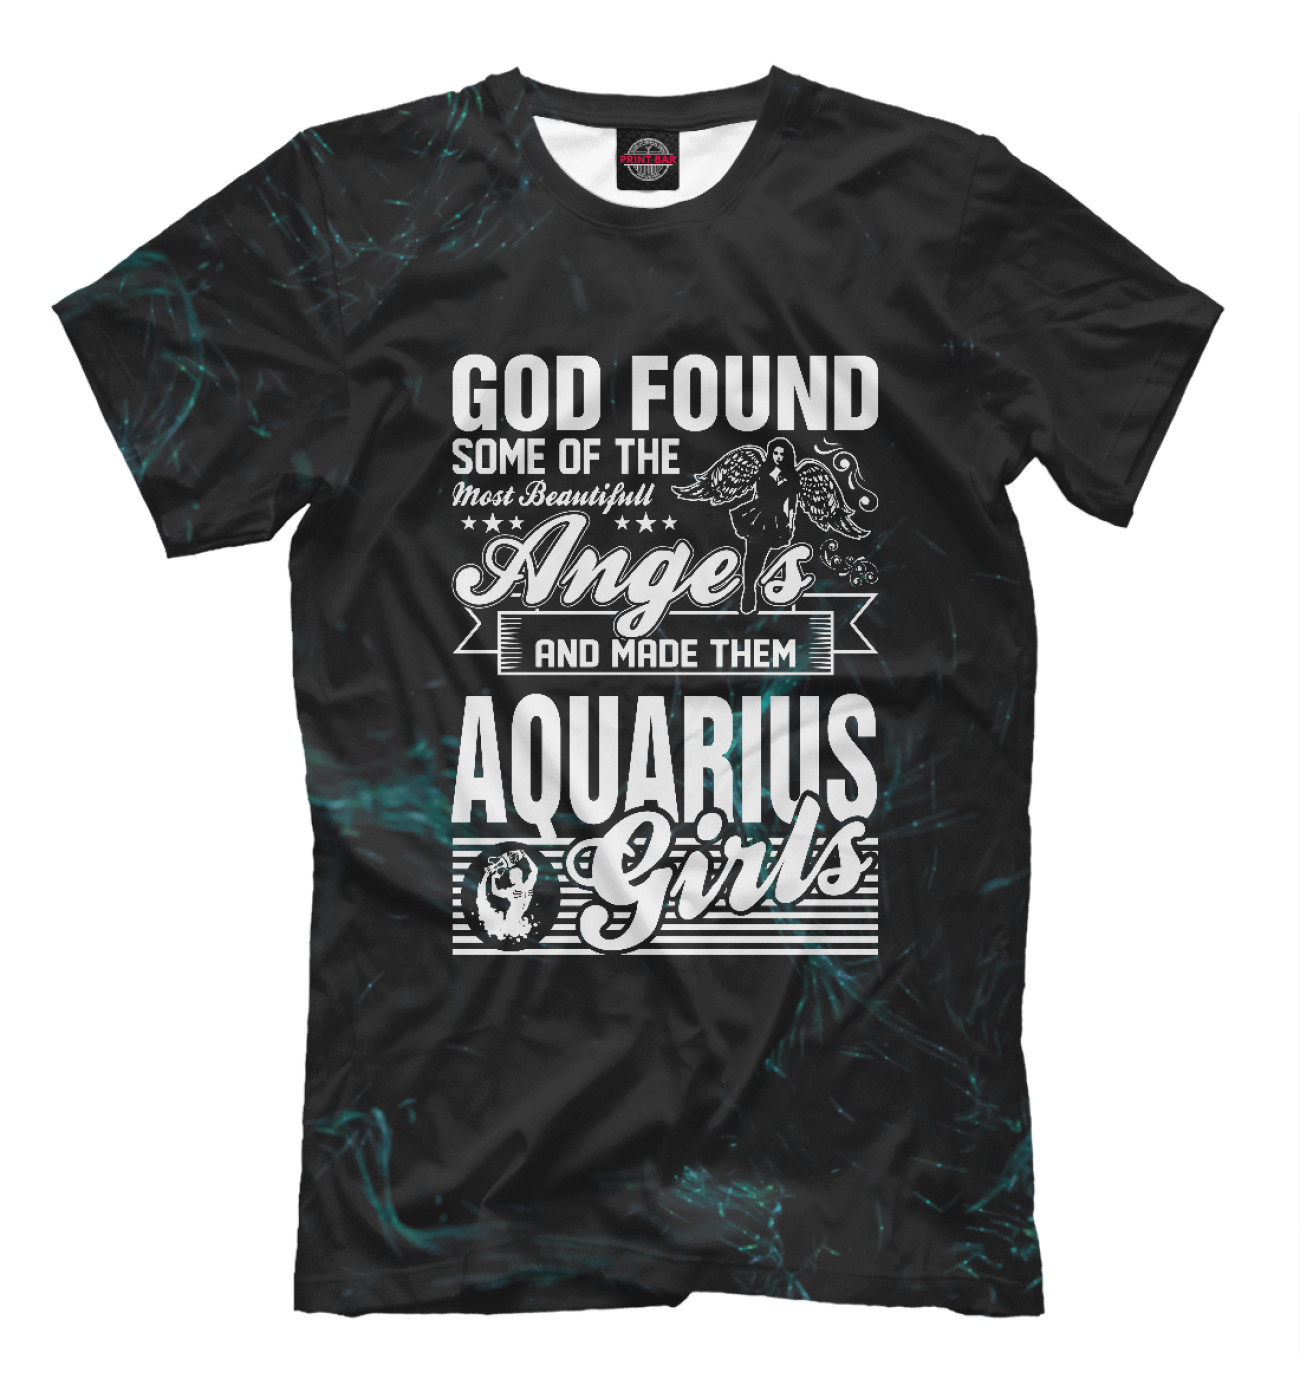 Мужская Футболка God Found Angels Aquarius, артикул: VDL-884024-fut-2